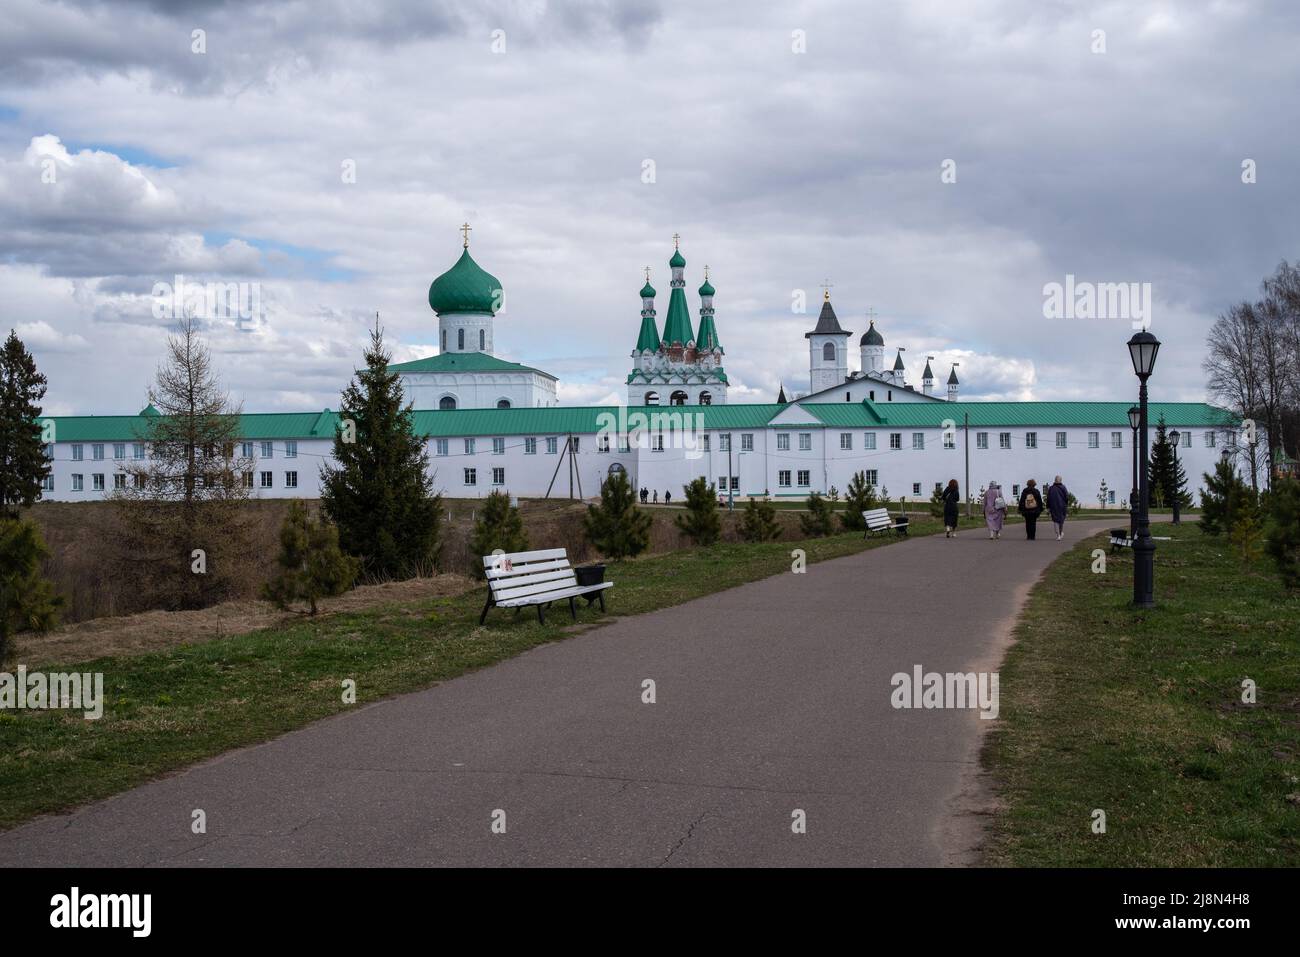 Trinity parte del monastero Alexander-Svirsky. Villaggio di Staraya Sloboda, regione di Leningrade, Russia Foto Stock